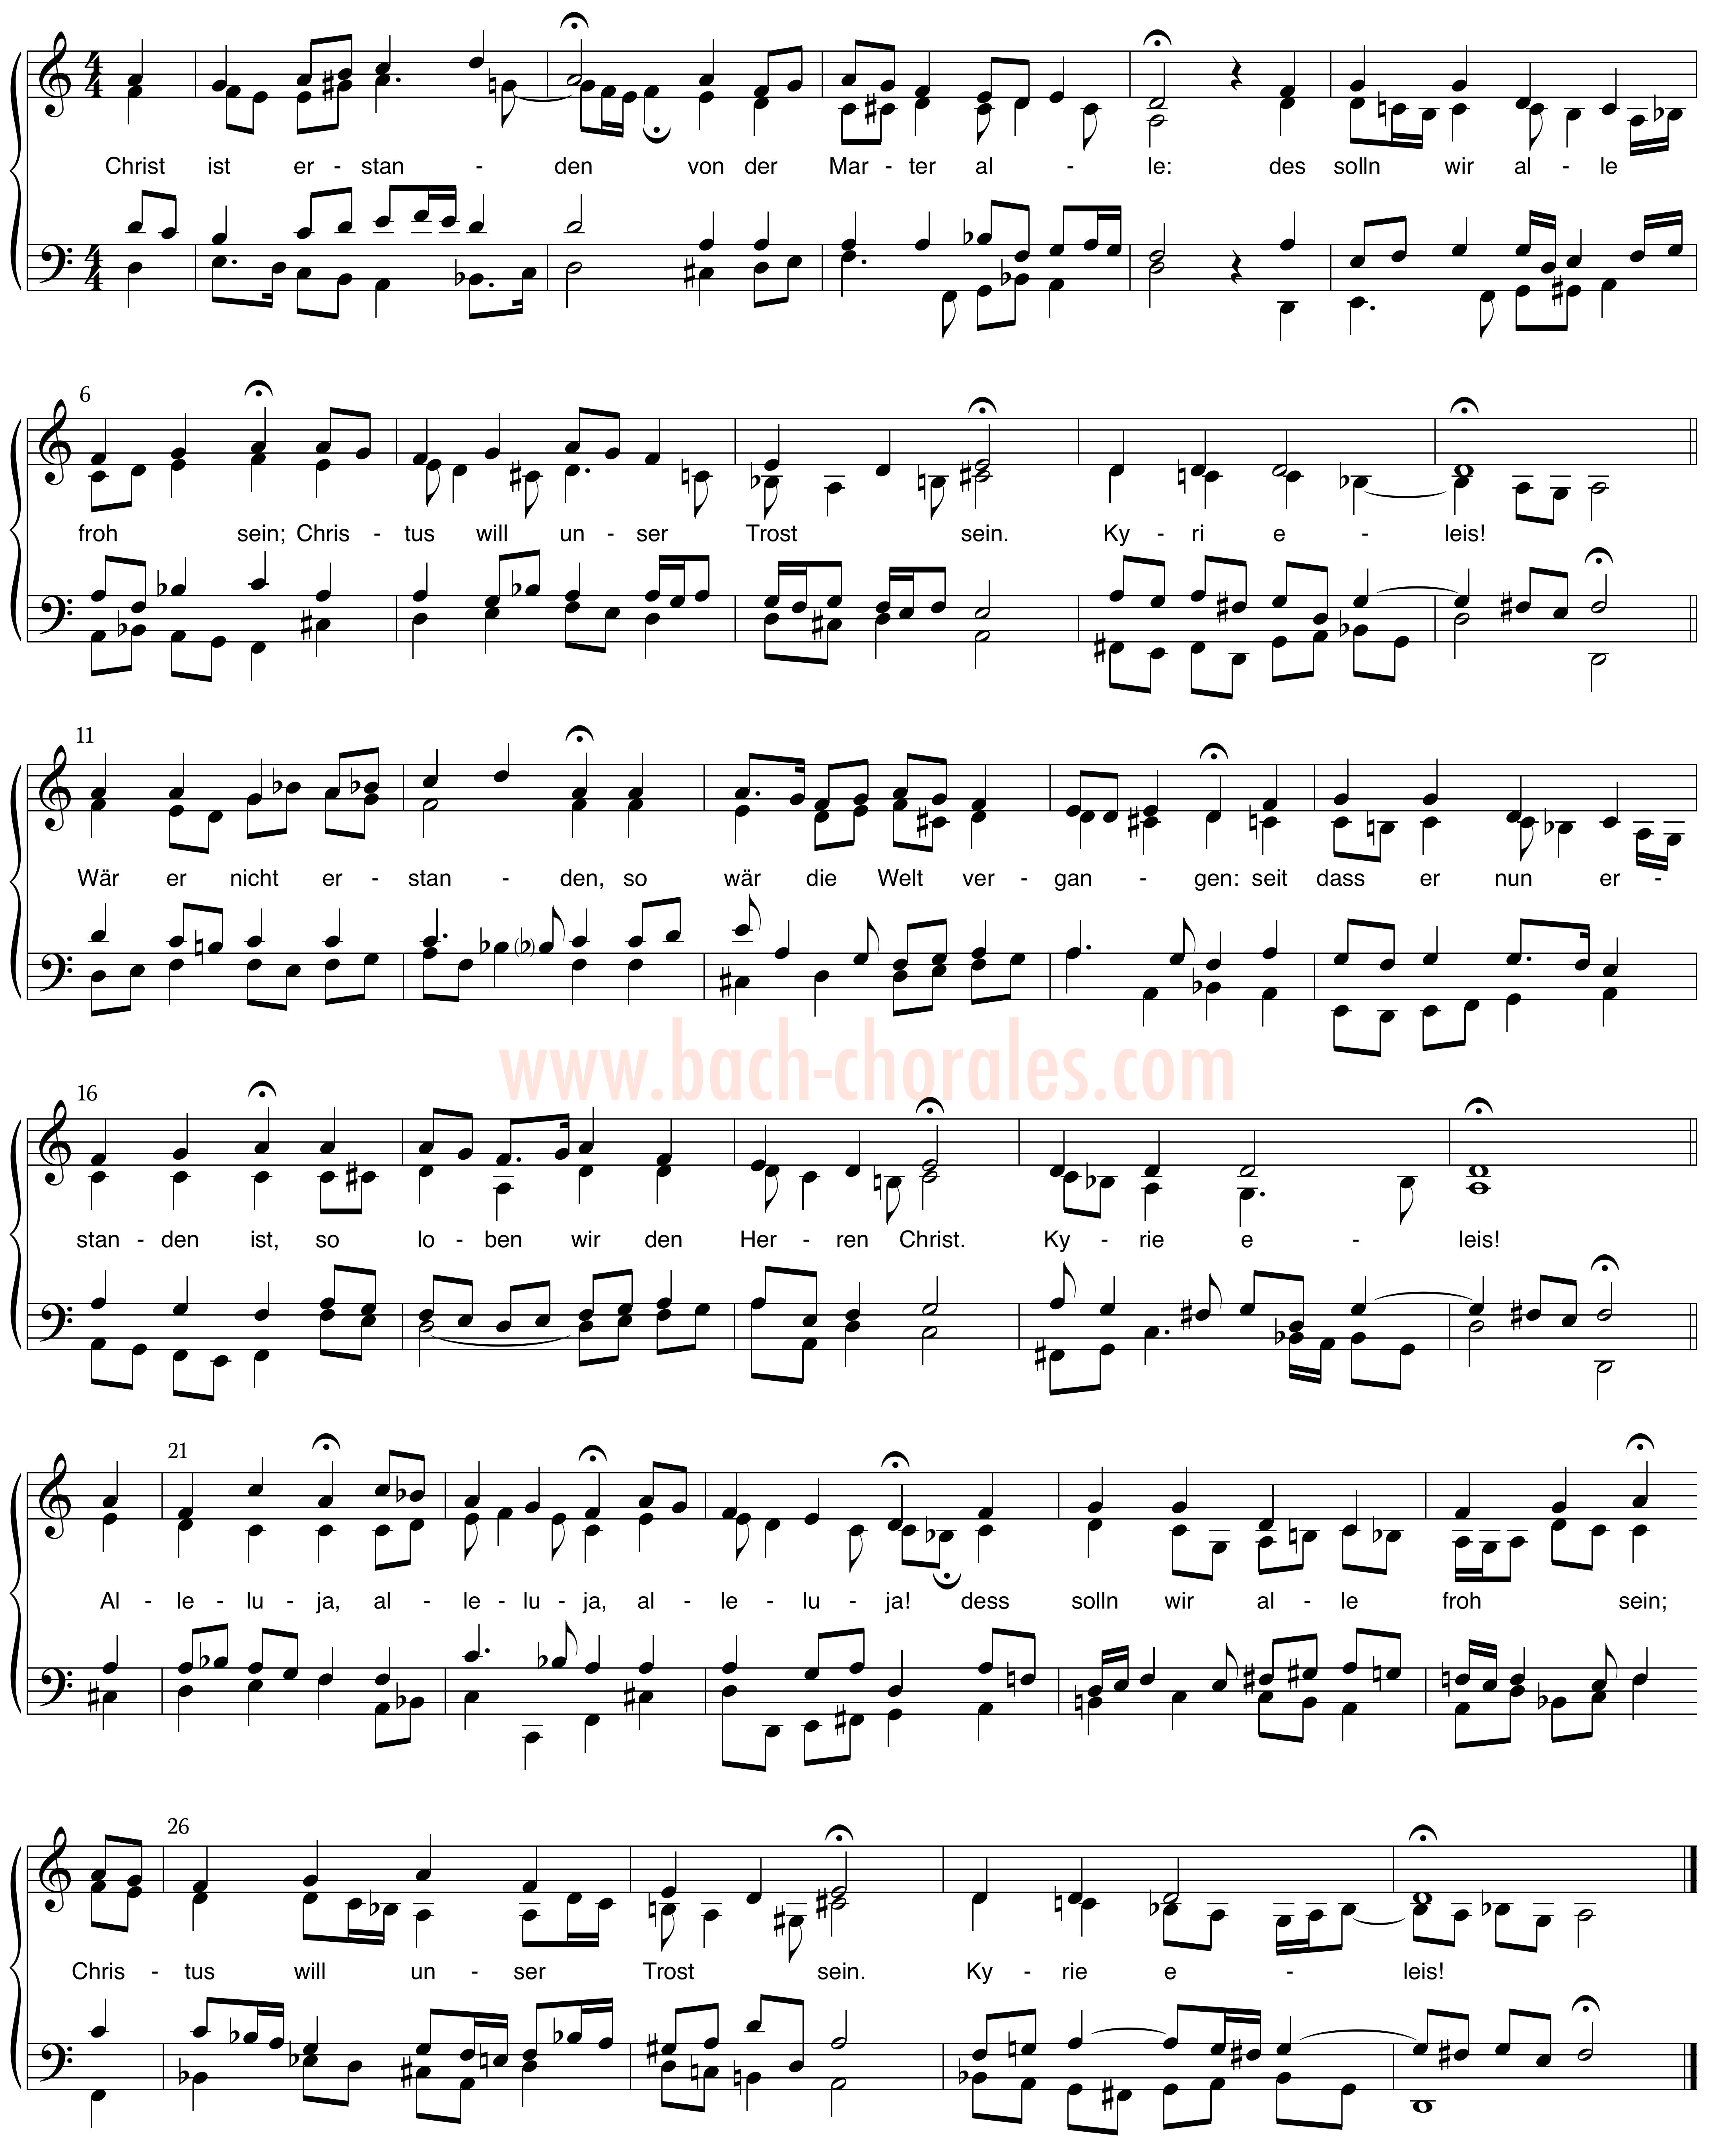 notenbeeld BWV 276 op https://www.bach-chorales.com/